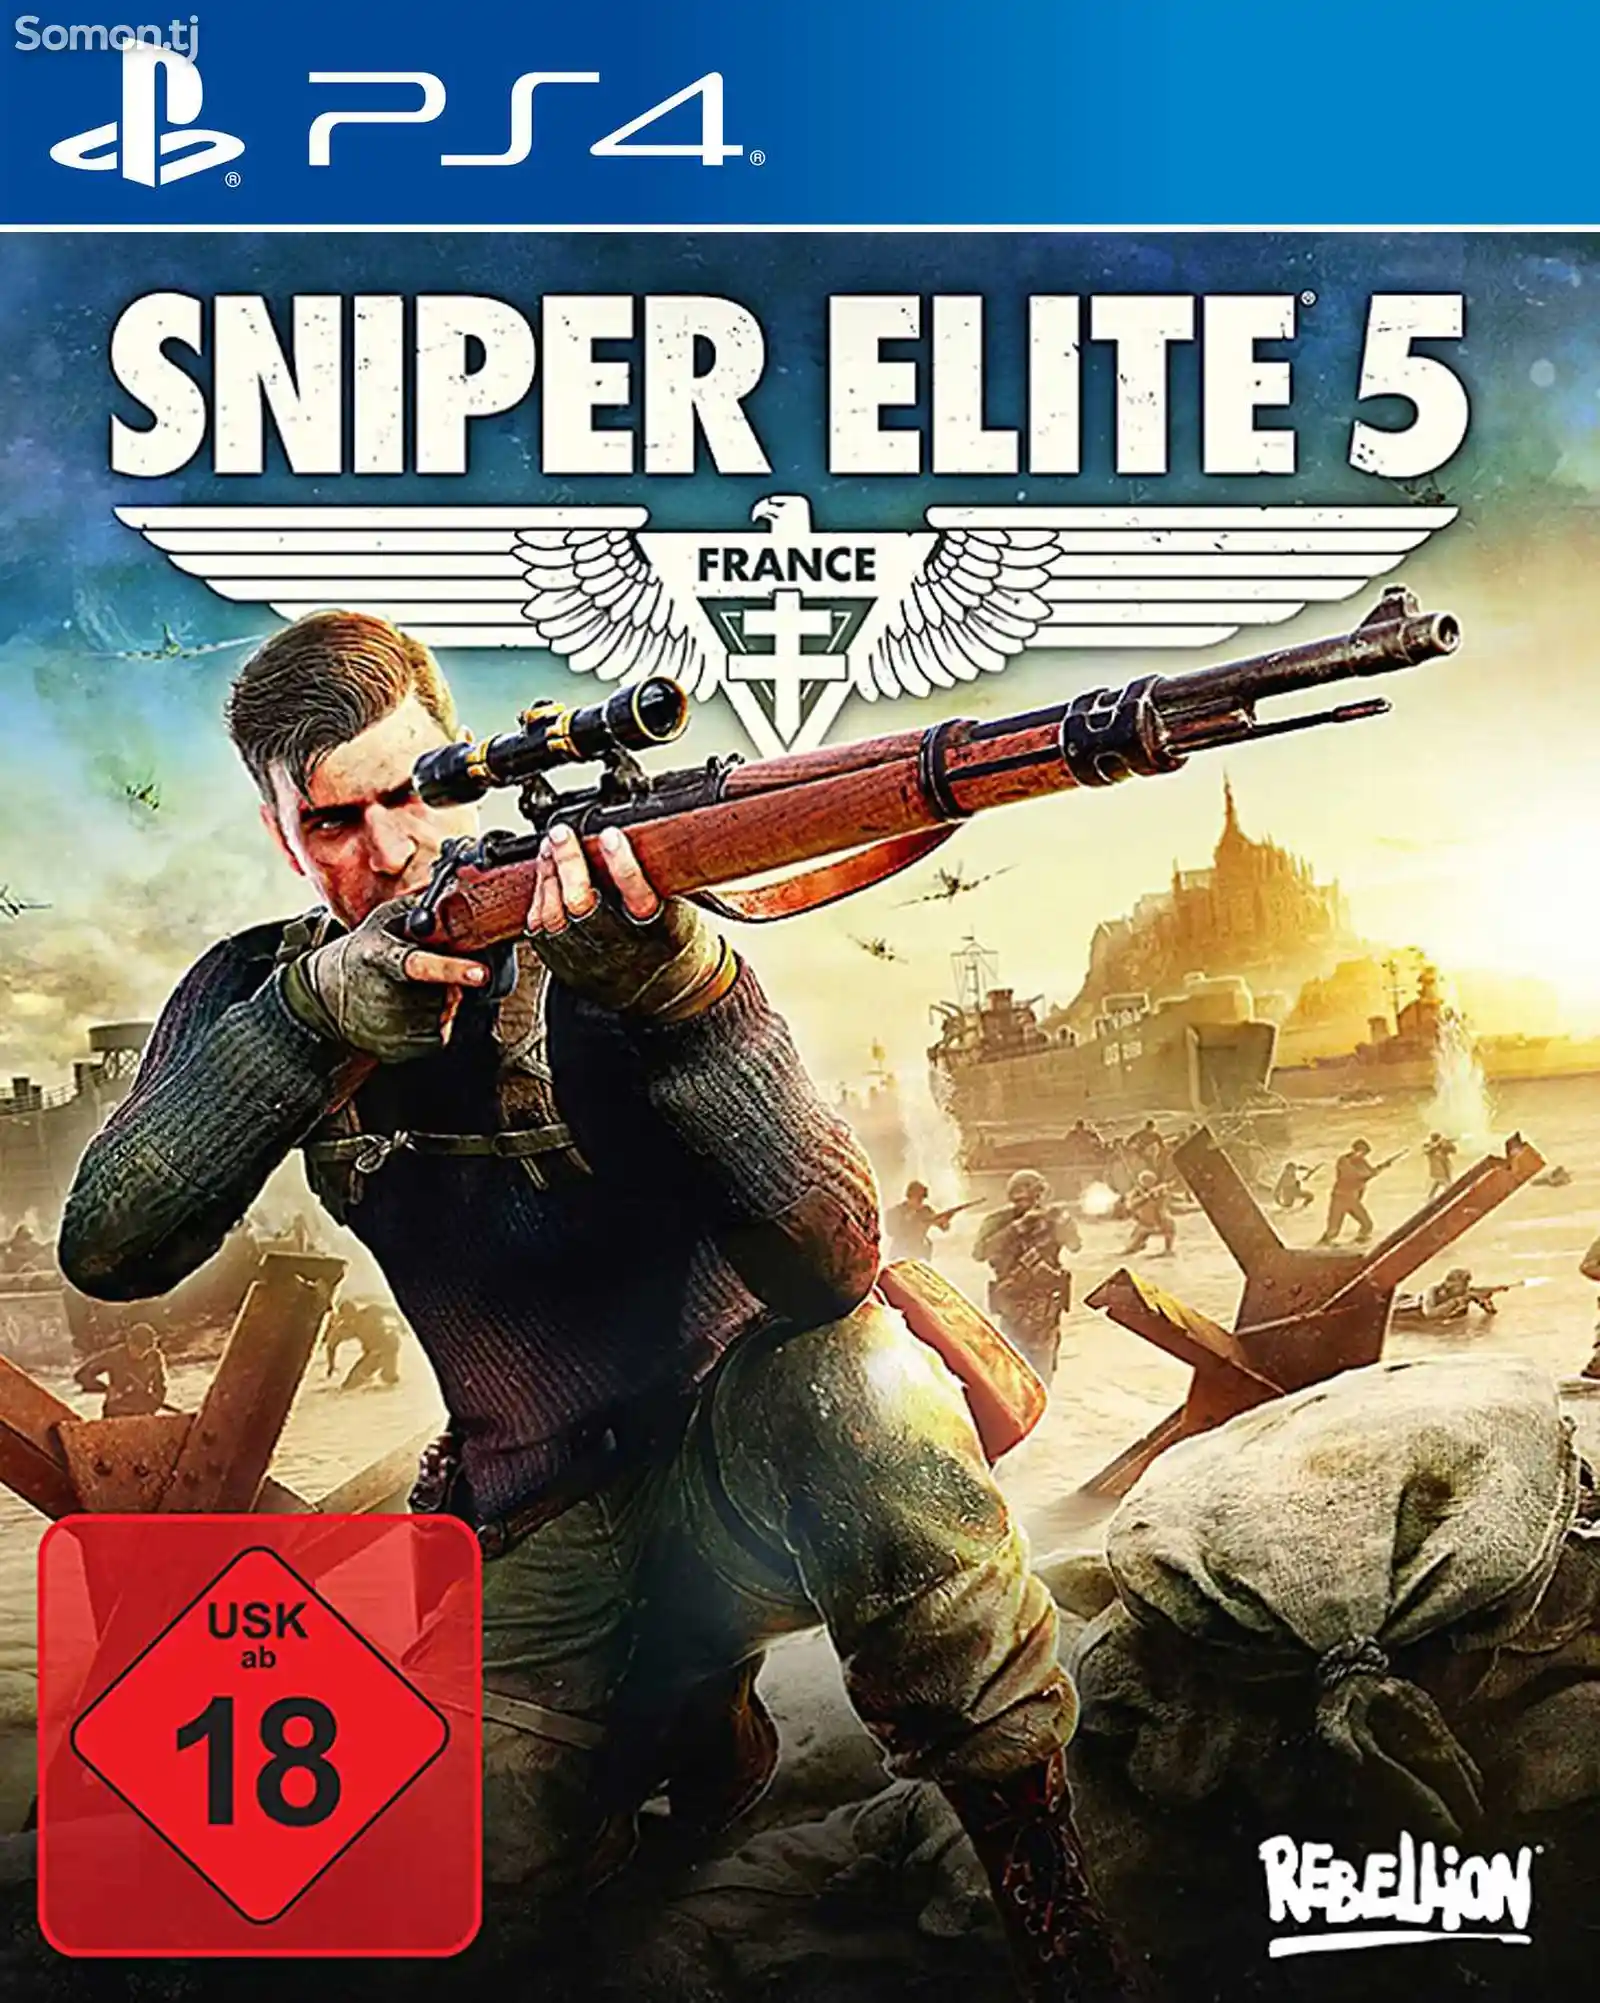 Игра Sniper elite 5 для PS-4 / 5.05 / 6.72 / 7.02 / 7.55 / 9.00 /-1